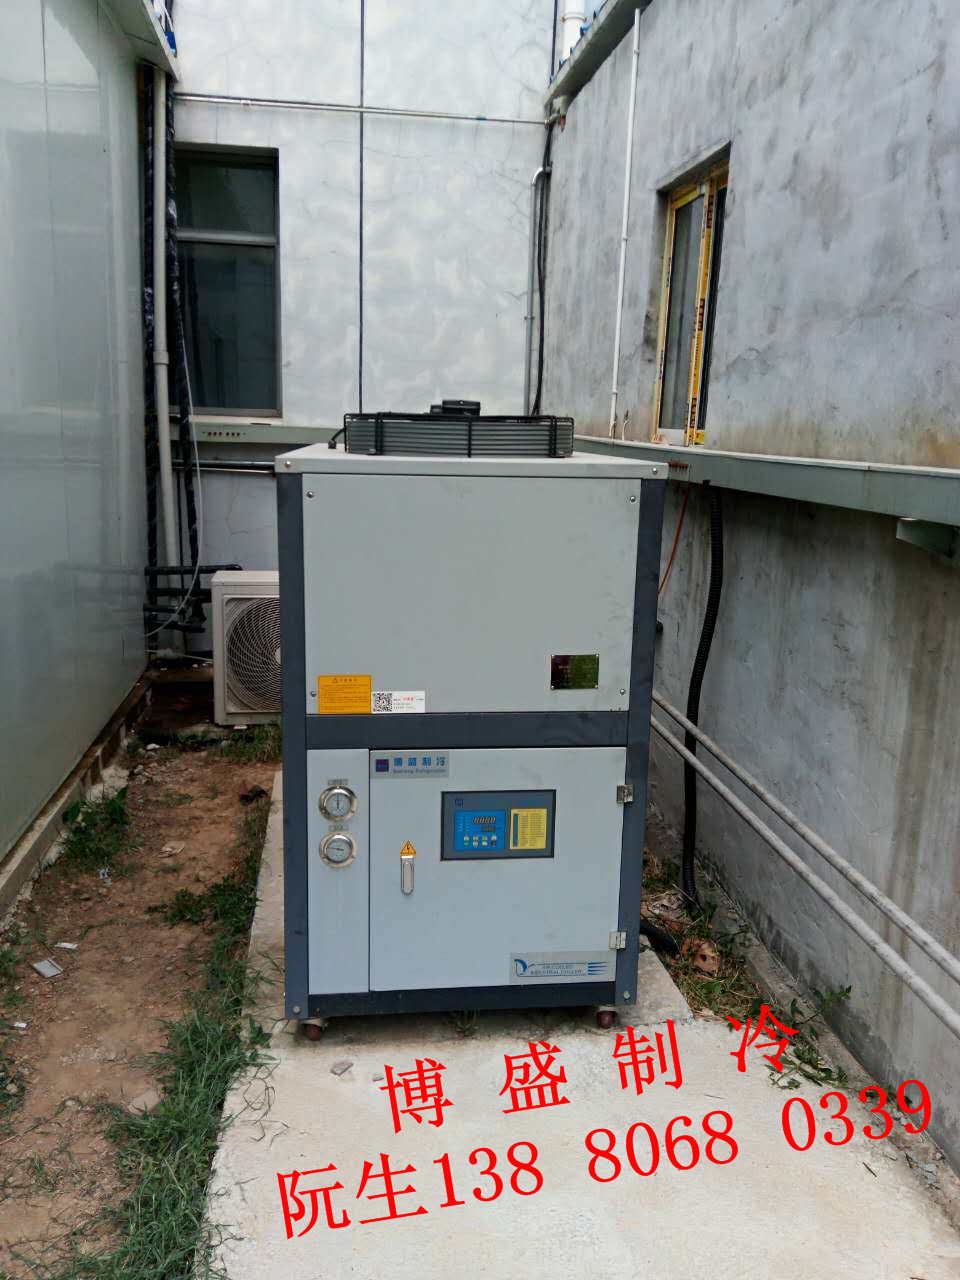 电镀专用冷水机价格  低温冷水机组,冷冻机组,电镀冷水机设备企业